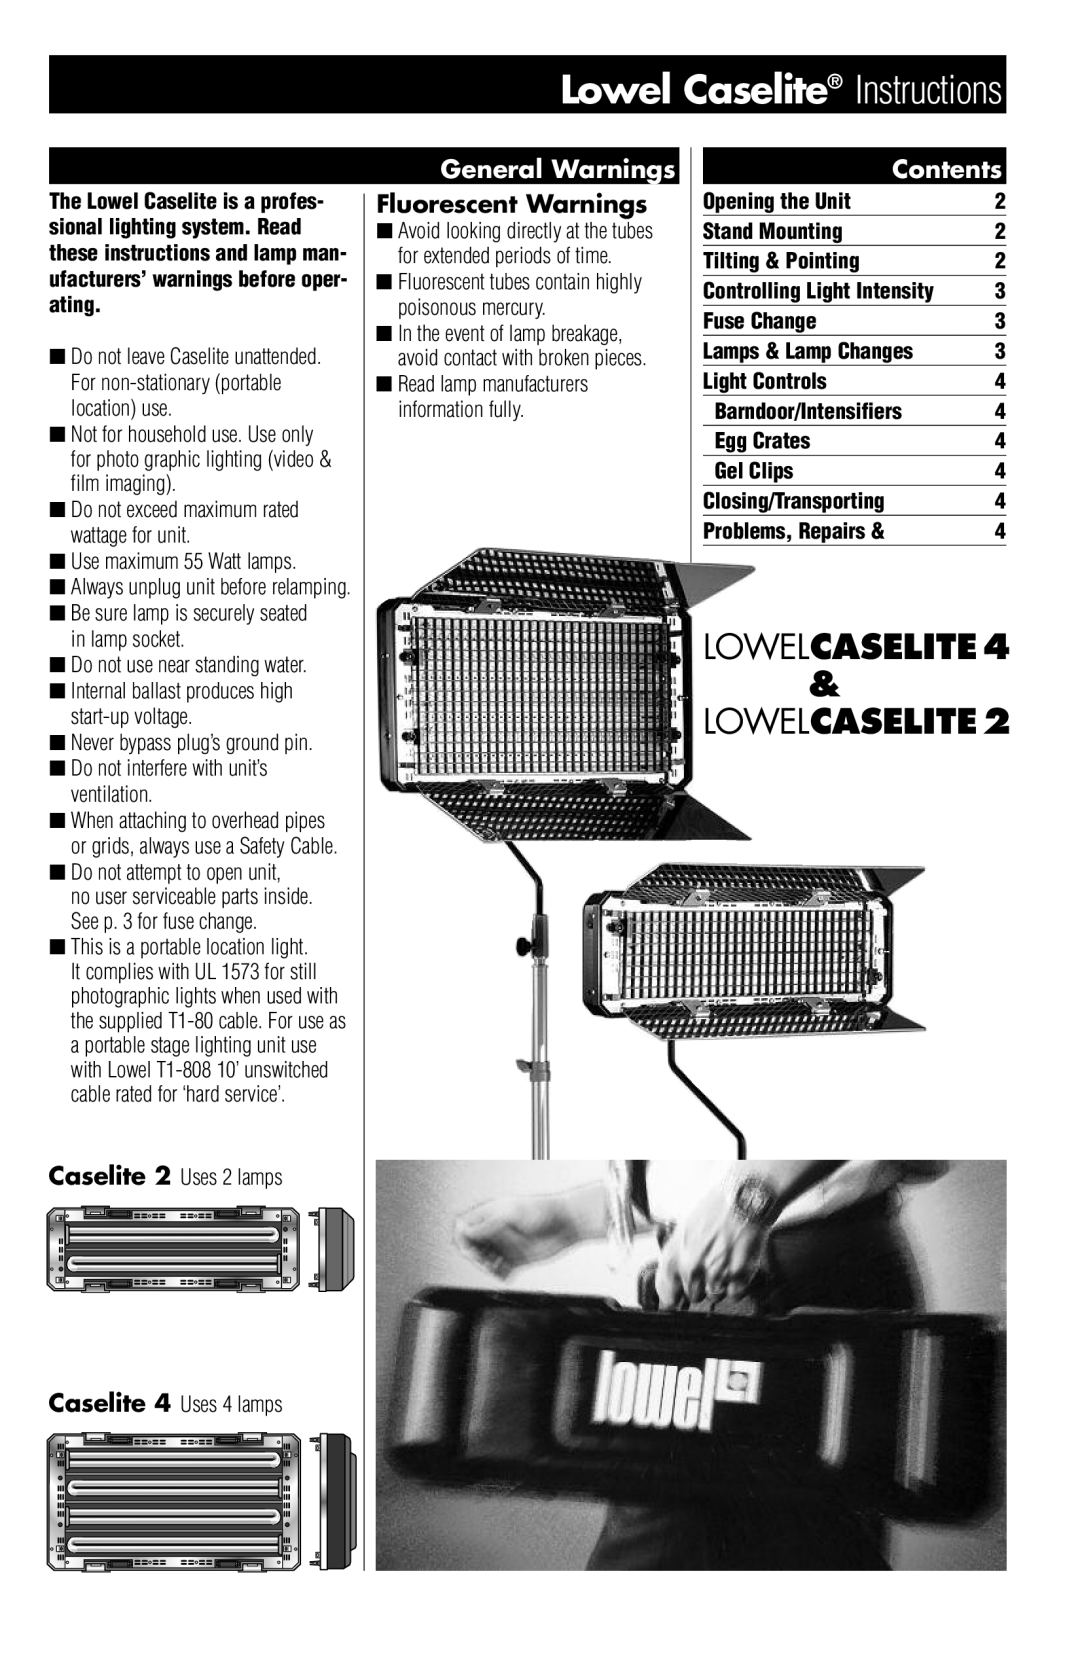 Lowel Light 2 manual Lowel Caselite Instructions, General Warnings, Fluorescent Warnings, Contents, LOWELCASELITE4 